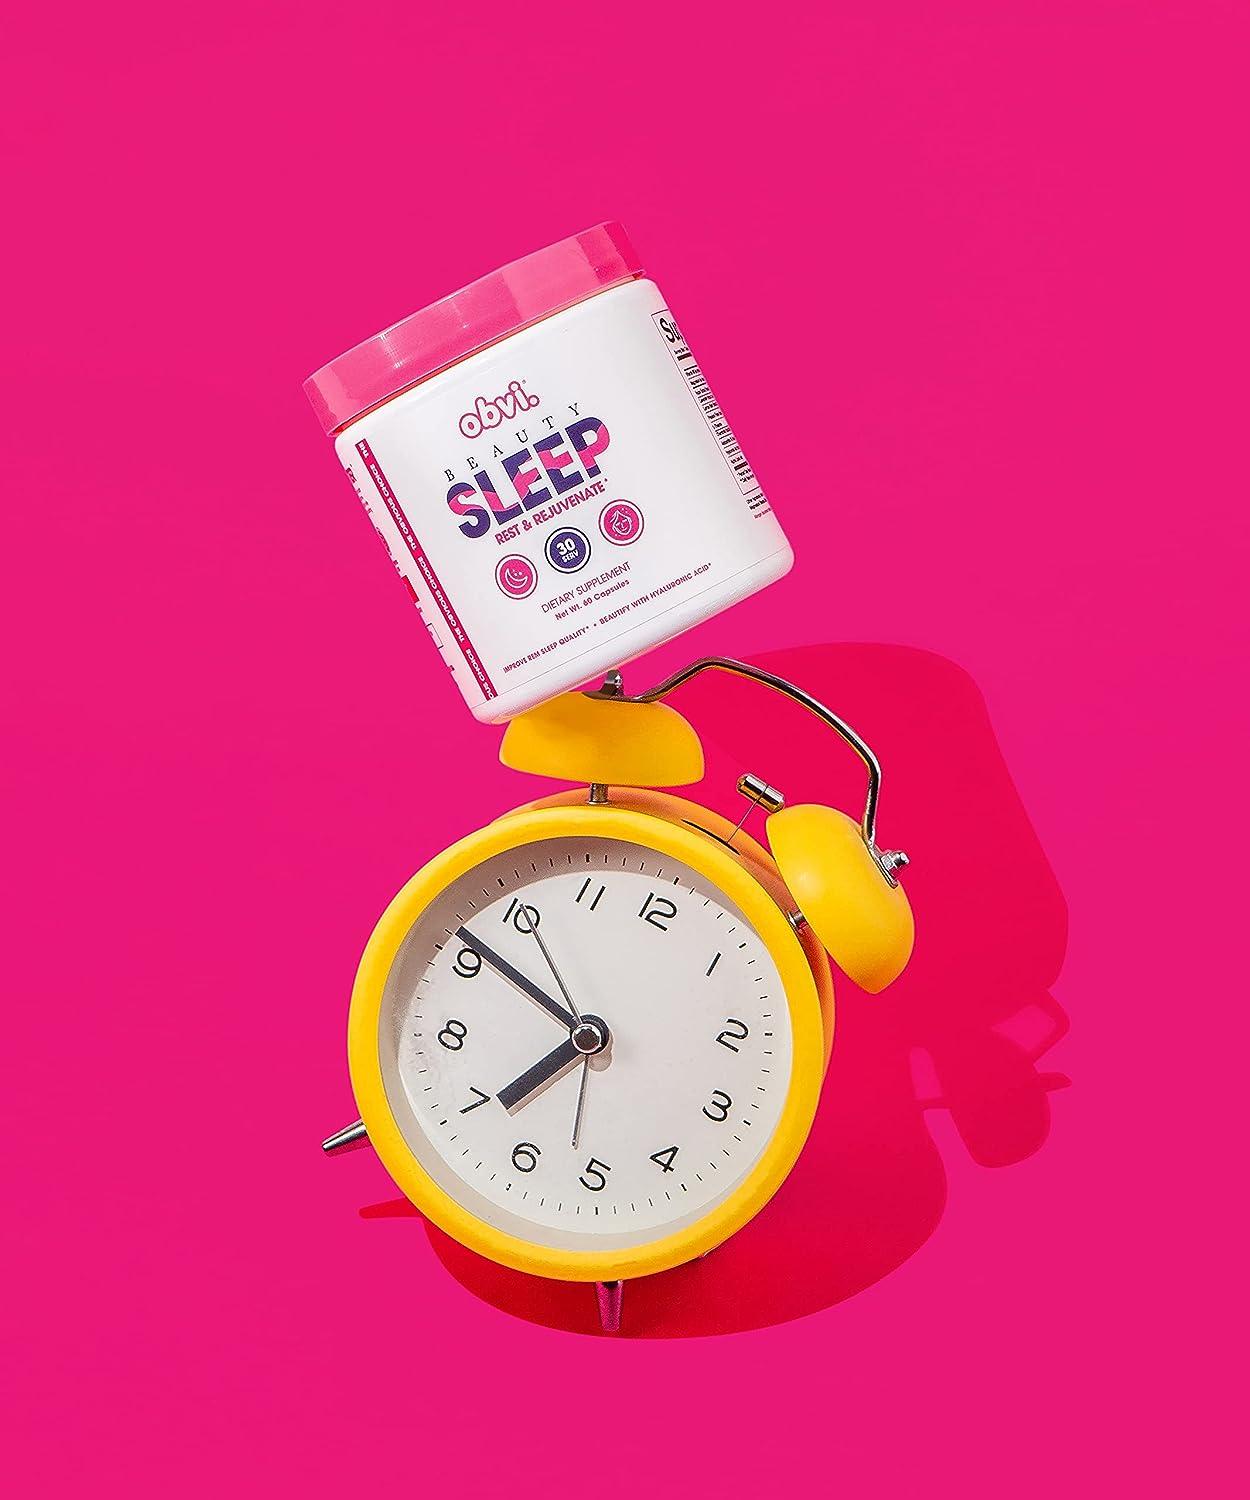 Sleeping Beauty® Sleep Supplements